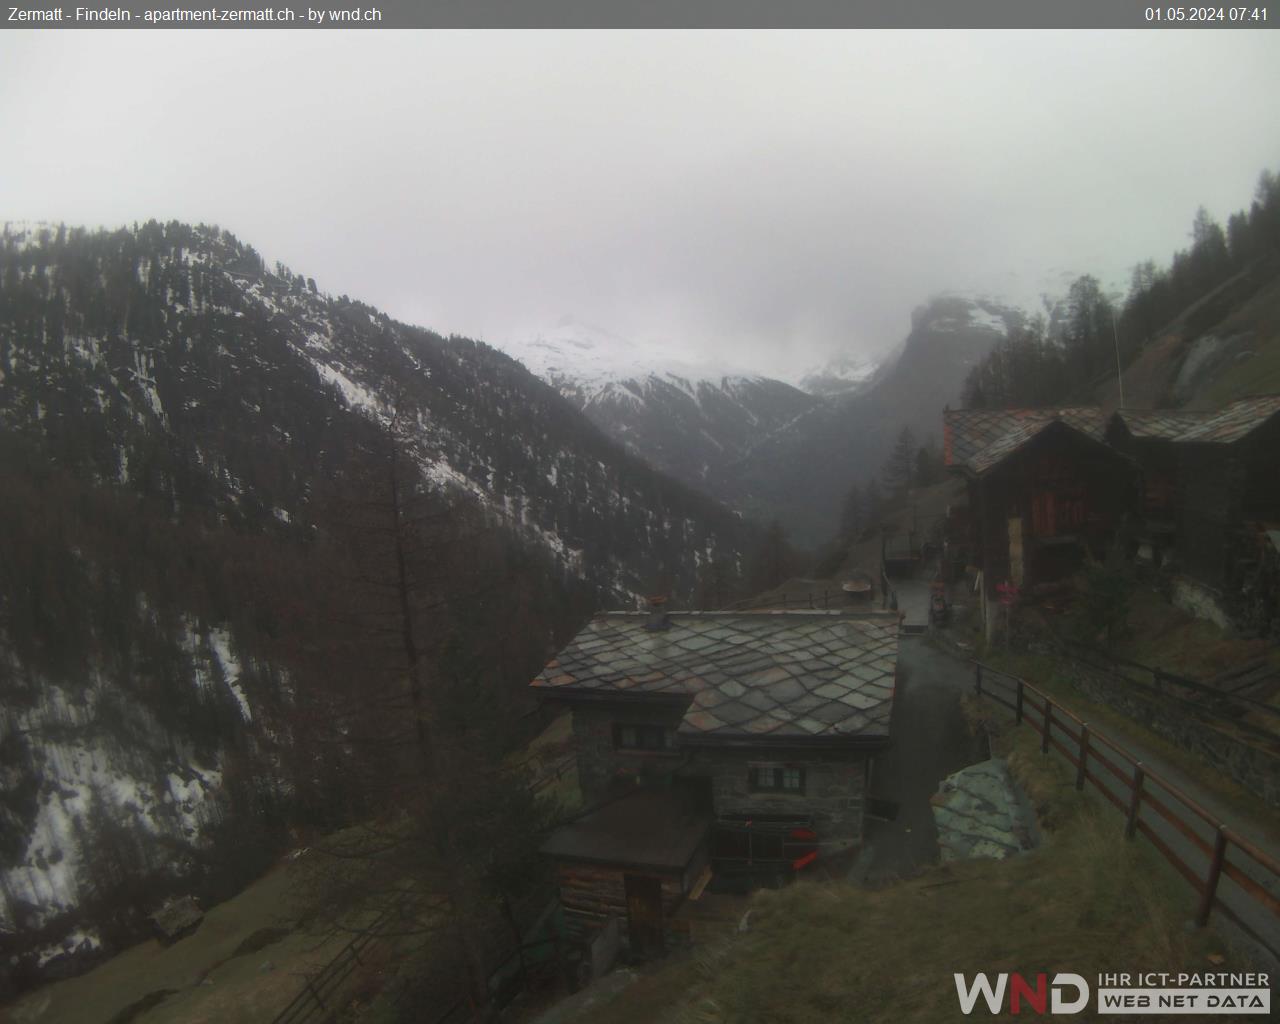 Webcam Zermatt - Findeln